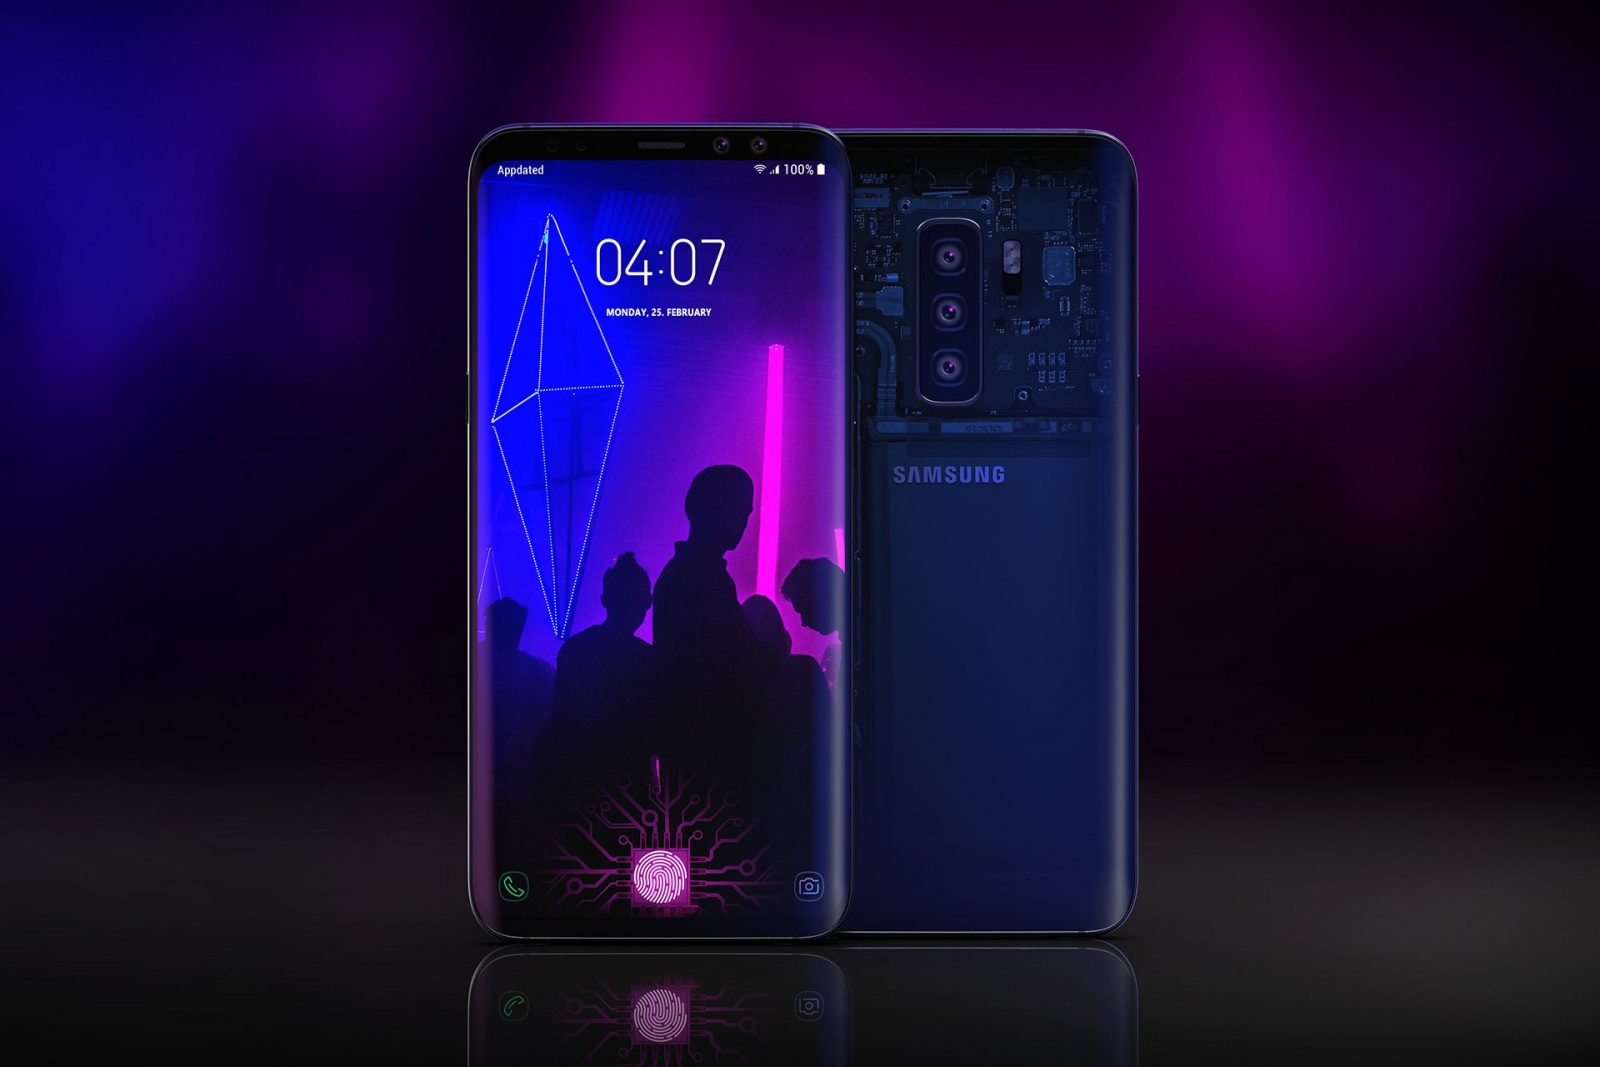 Samsung Galaxy 10 Plus Stars Wars